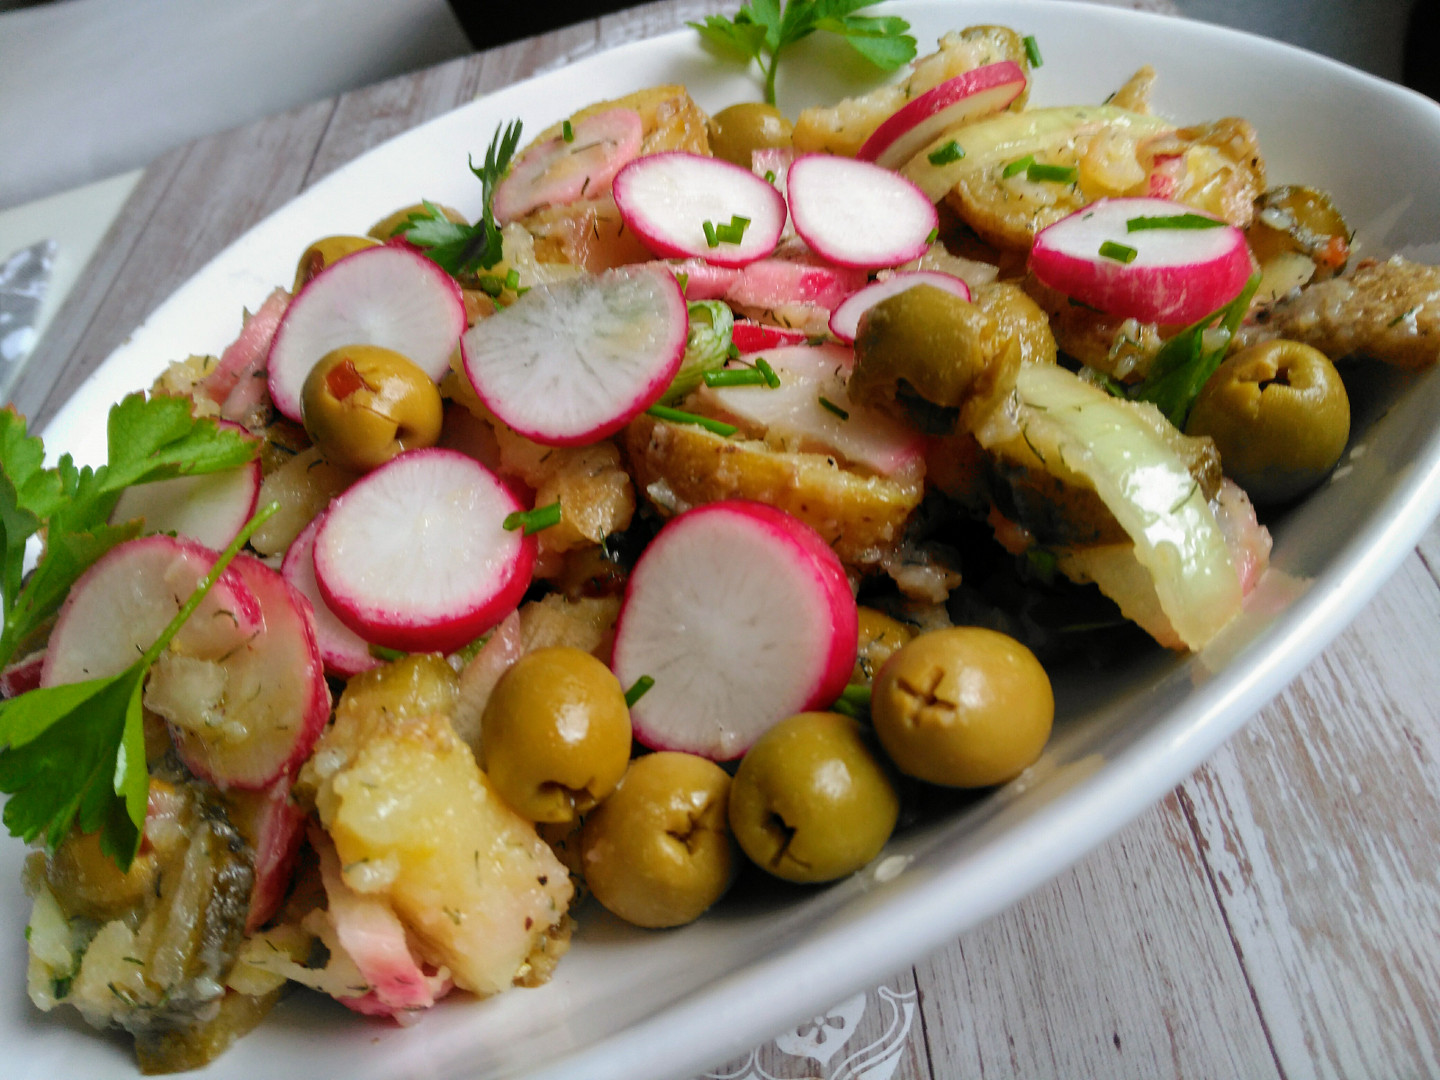 Barevný salát z pečených brambor s ředkvičkami a olivami